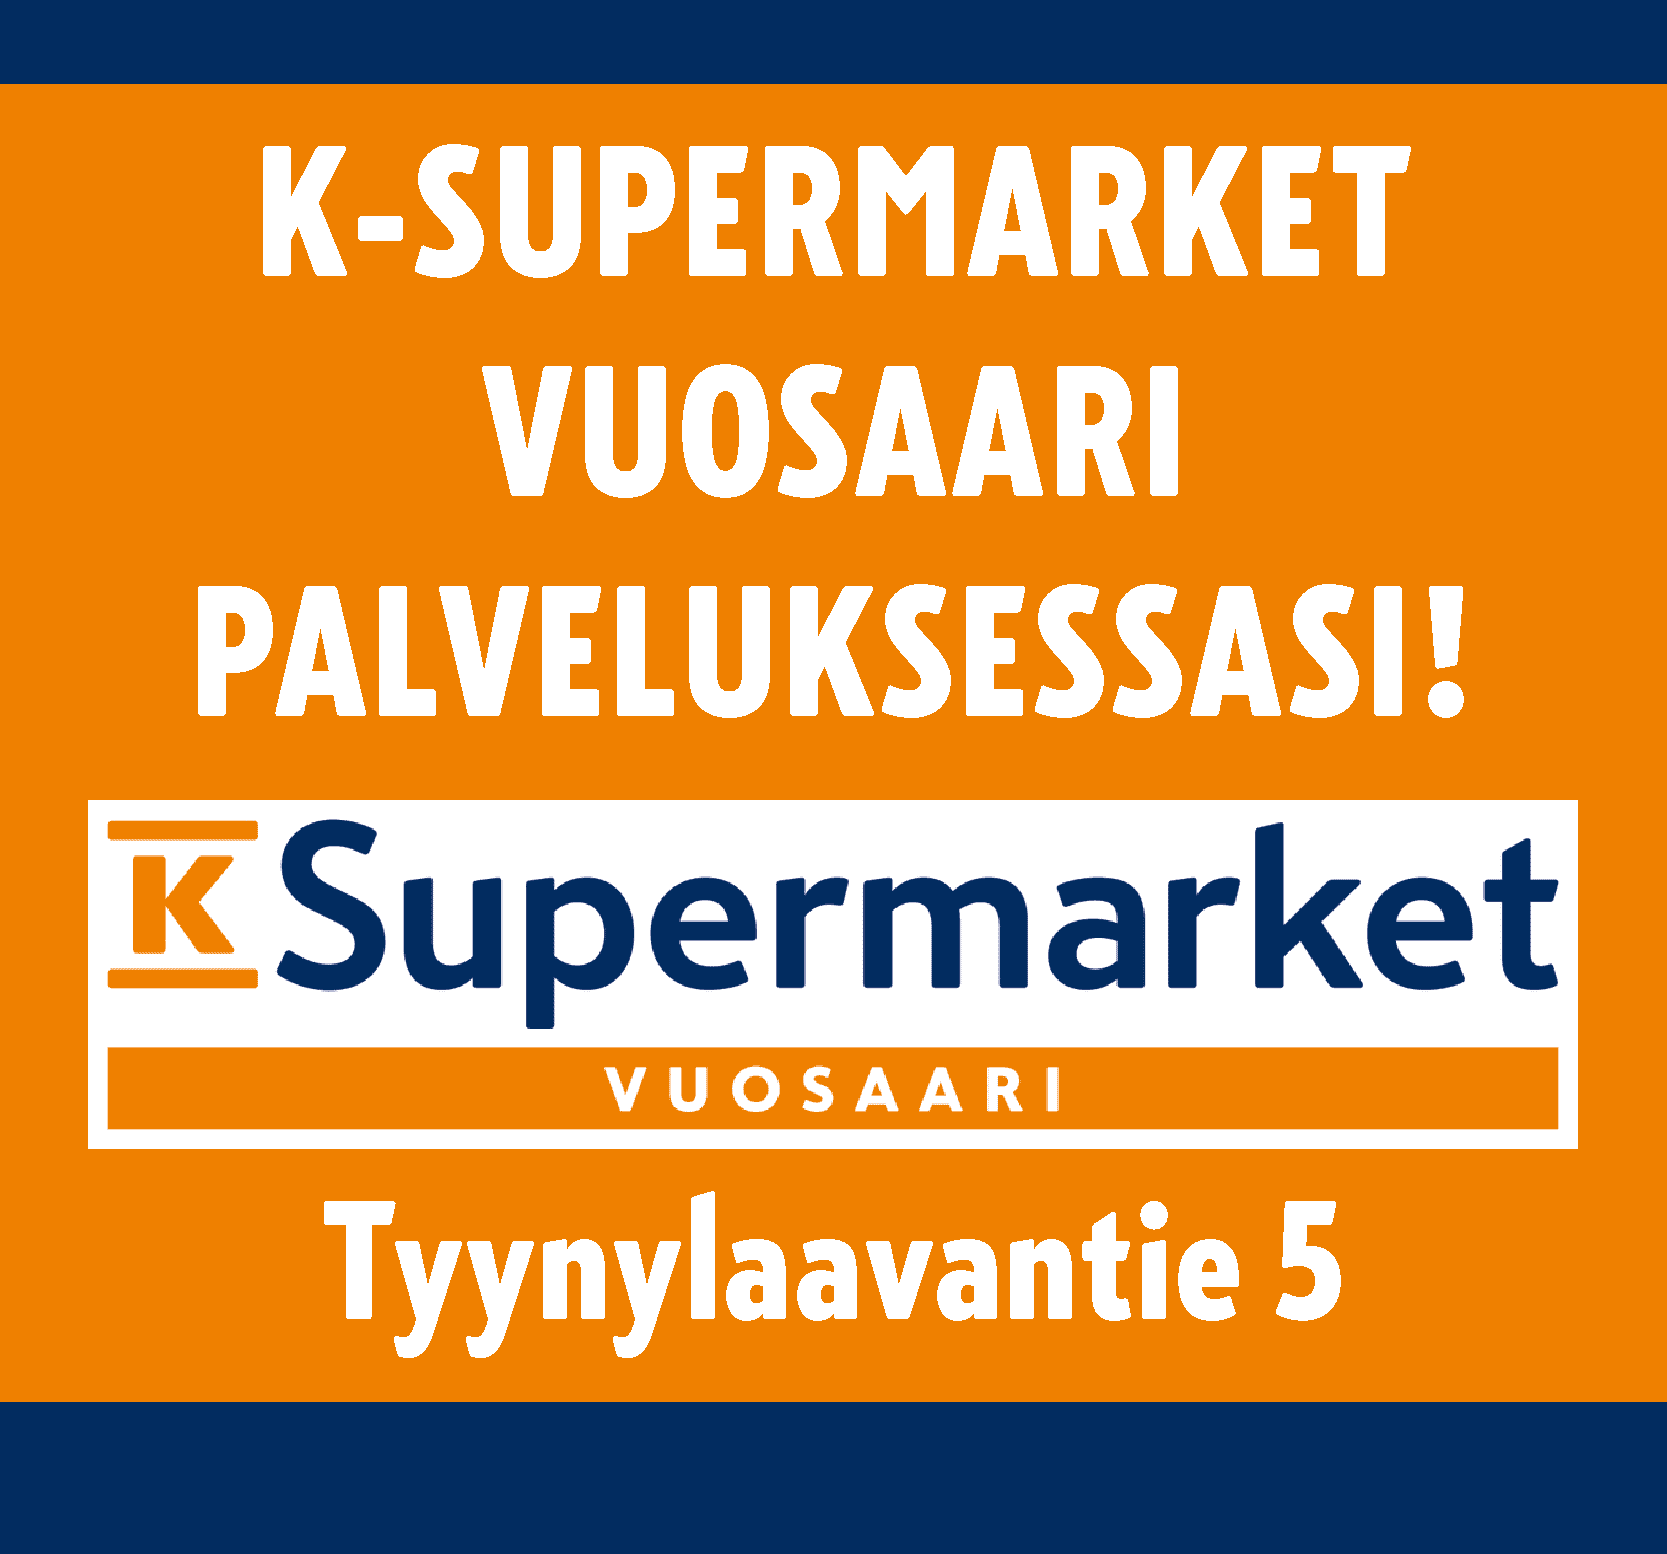 K-Supermarket Vuosaari